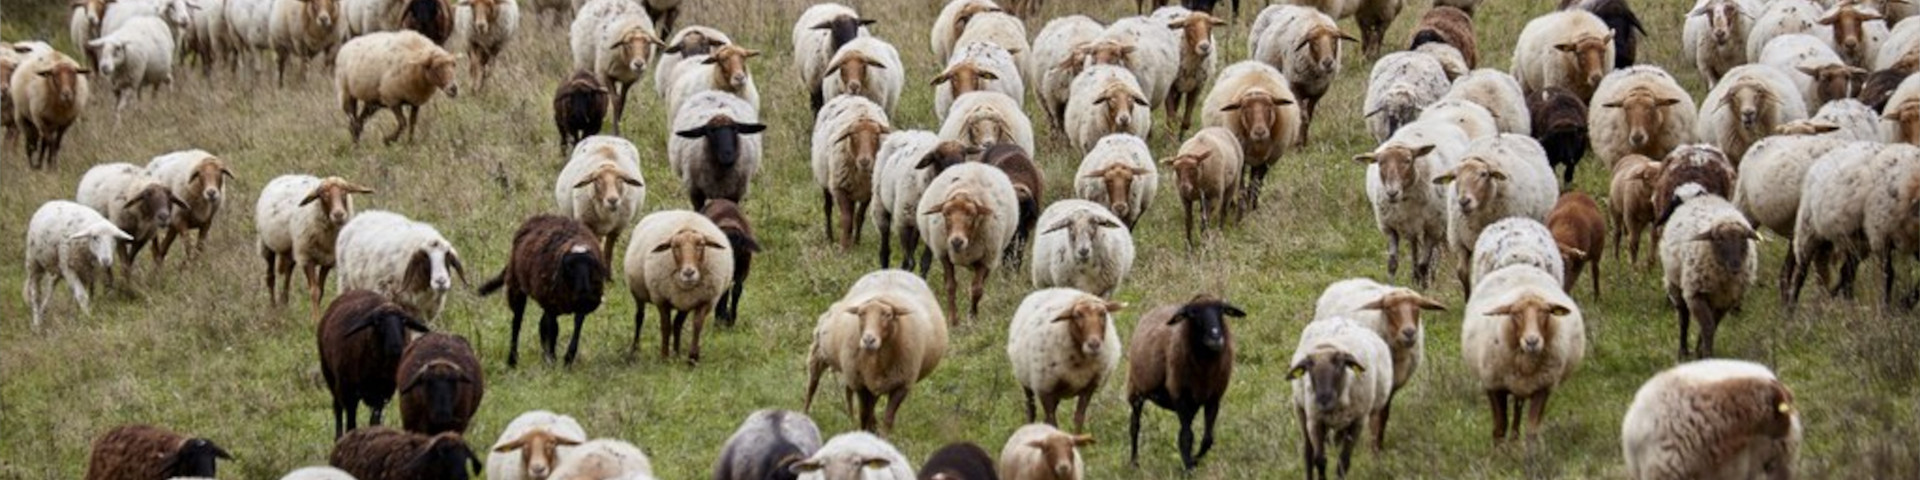 Eine Schafsherde